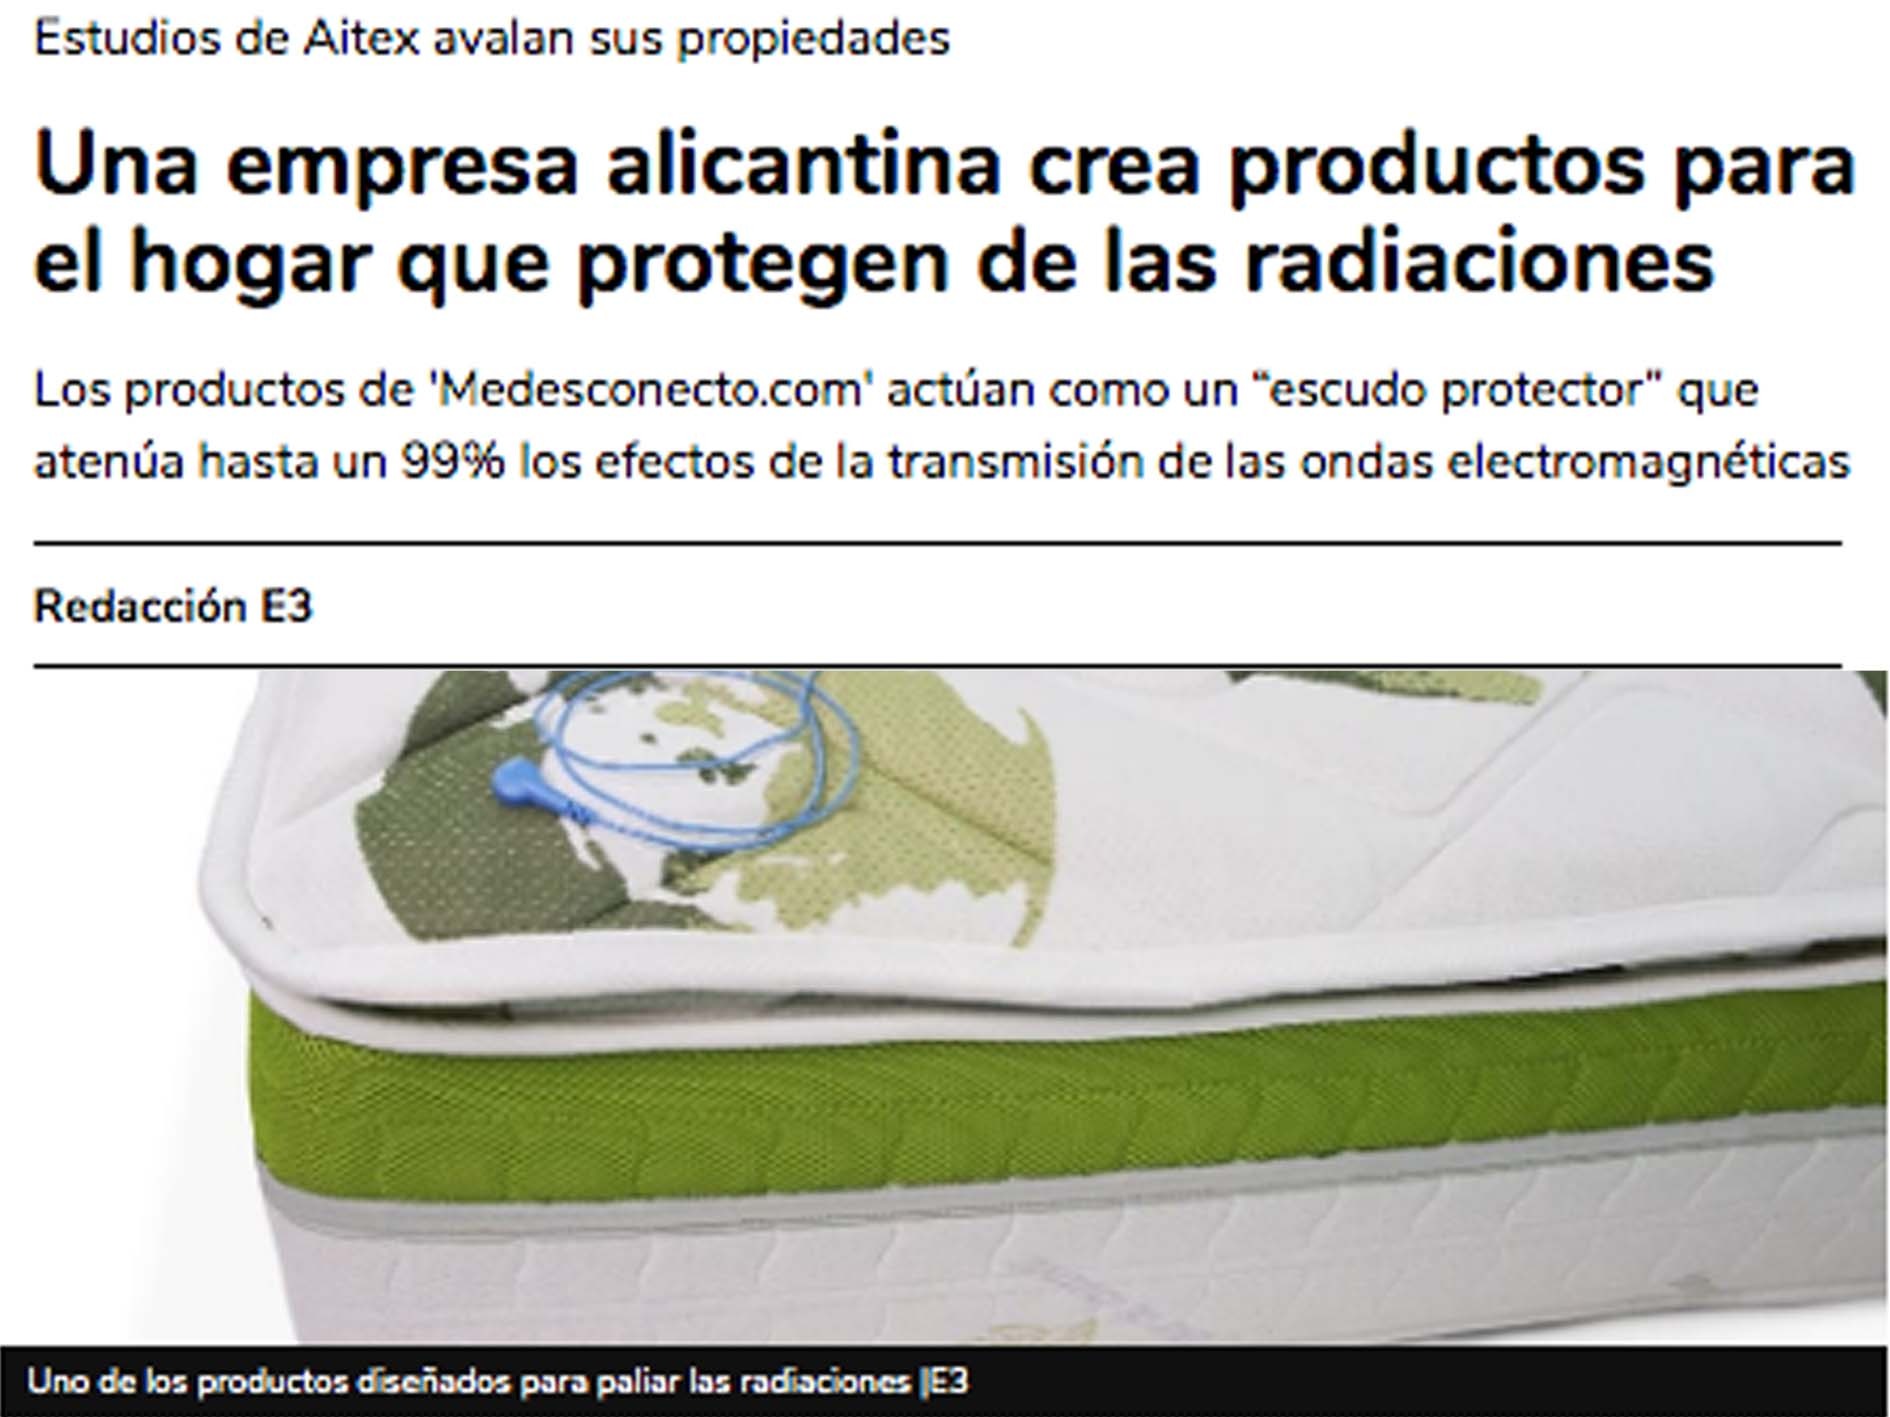 El digital Economía 3 destaca que “Una empresa alicantina crea productos para el hogar que protegen de las radiaciones”